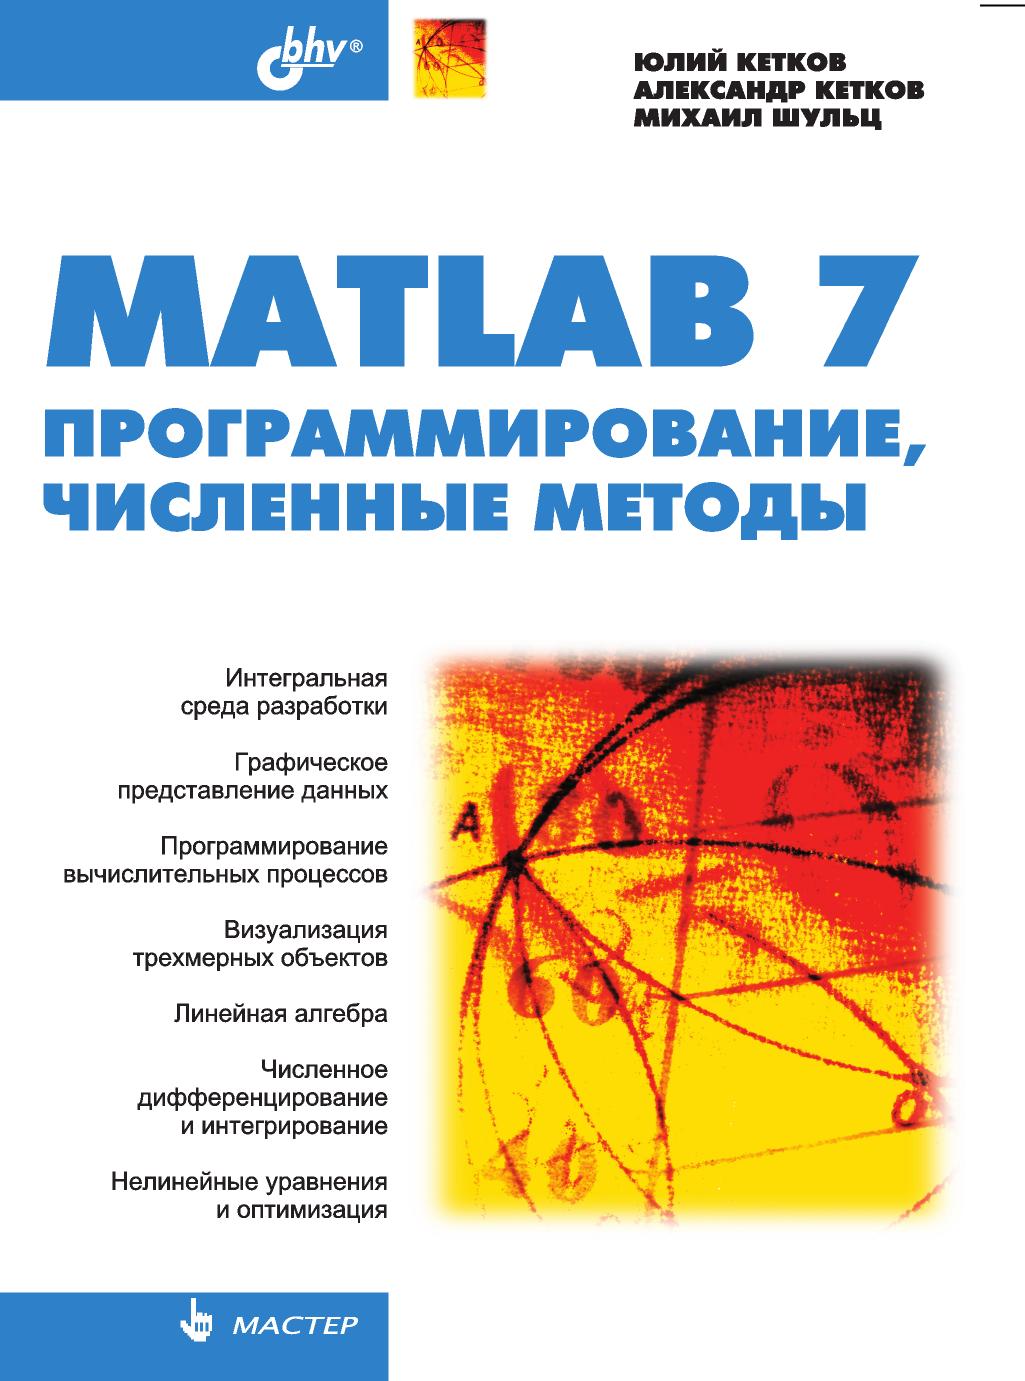 М. Шульц, Ю. Кетков, А. Кетков - «Мастер Matlab 7. Программирование, численные методы»